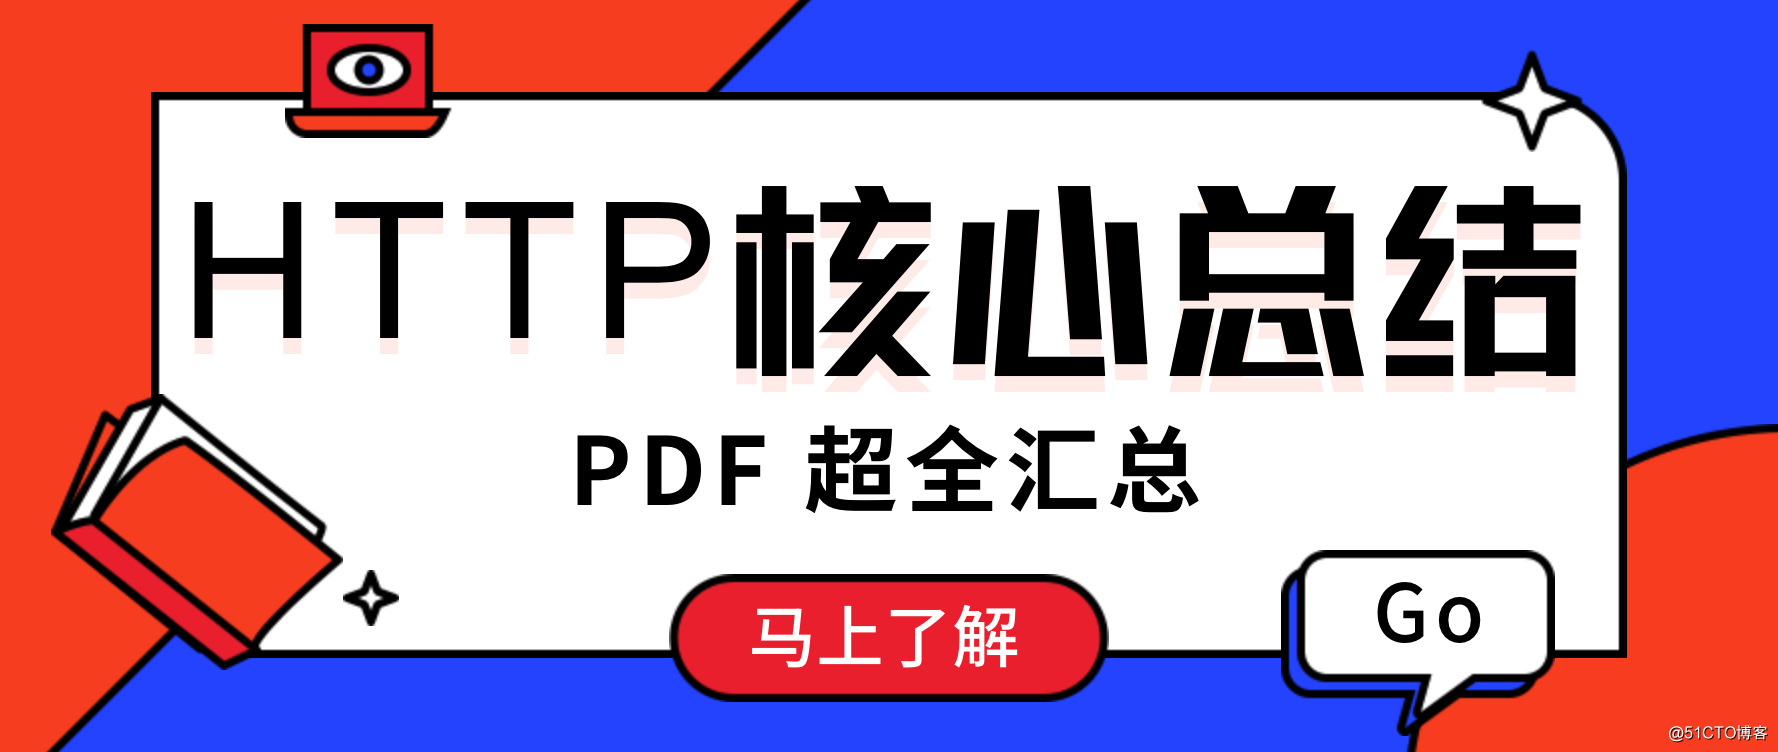 HTTP 核心总结 PDF 也出来了！！！